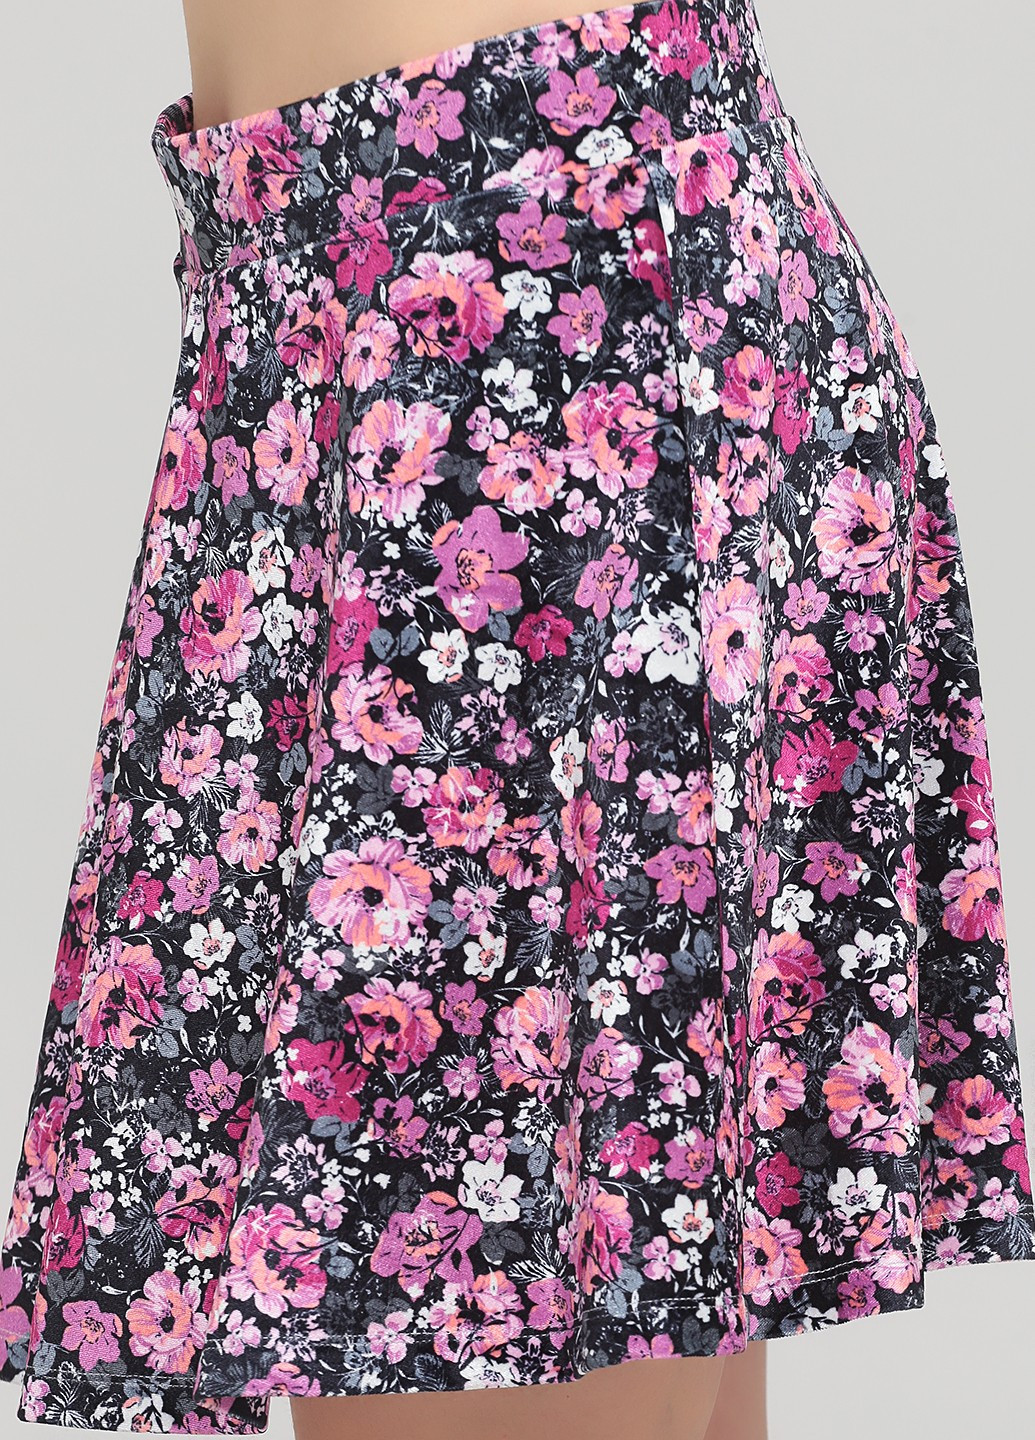 Черная цветочной расцветки юбка C&A